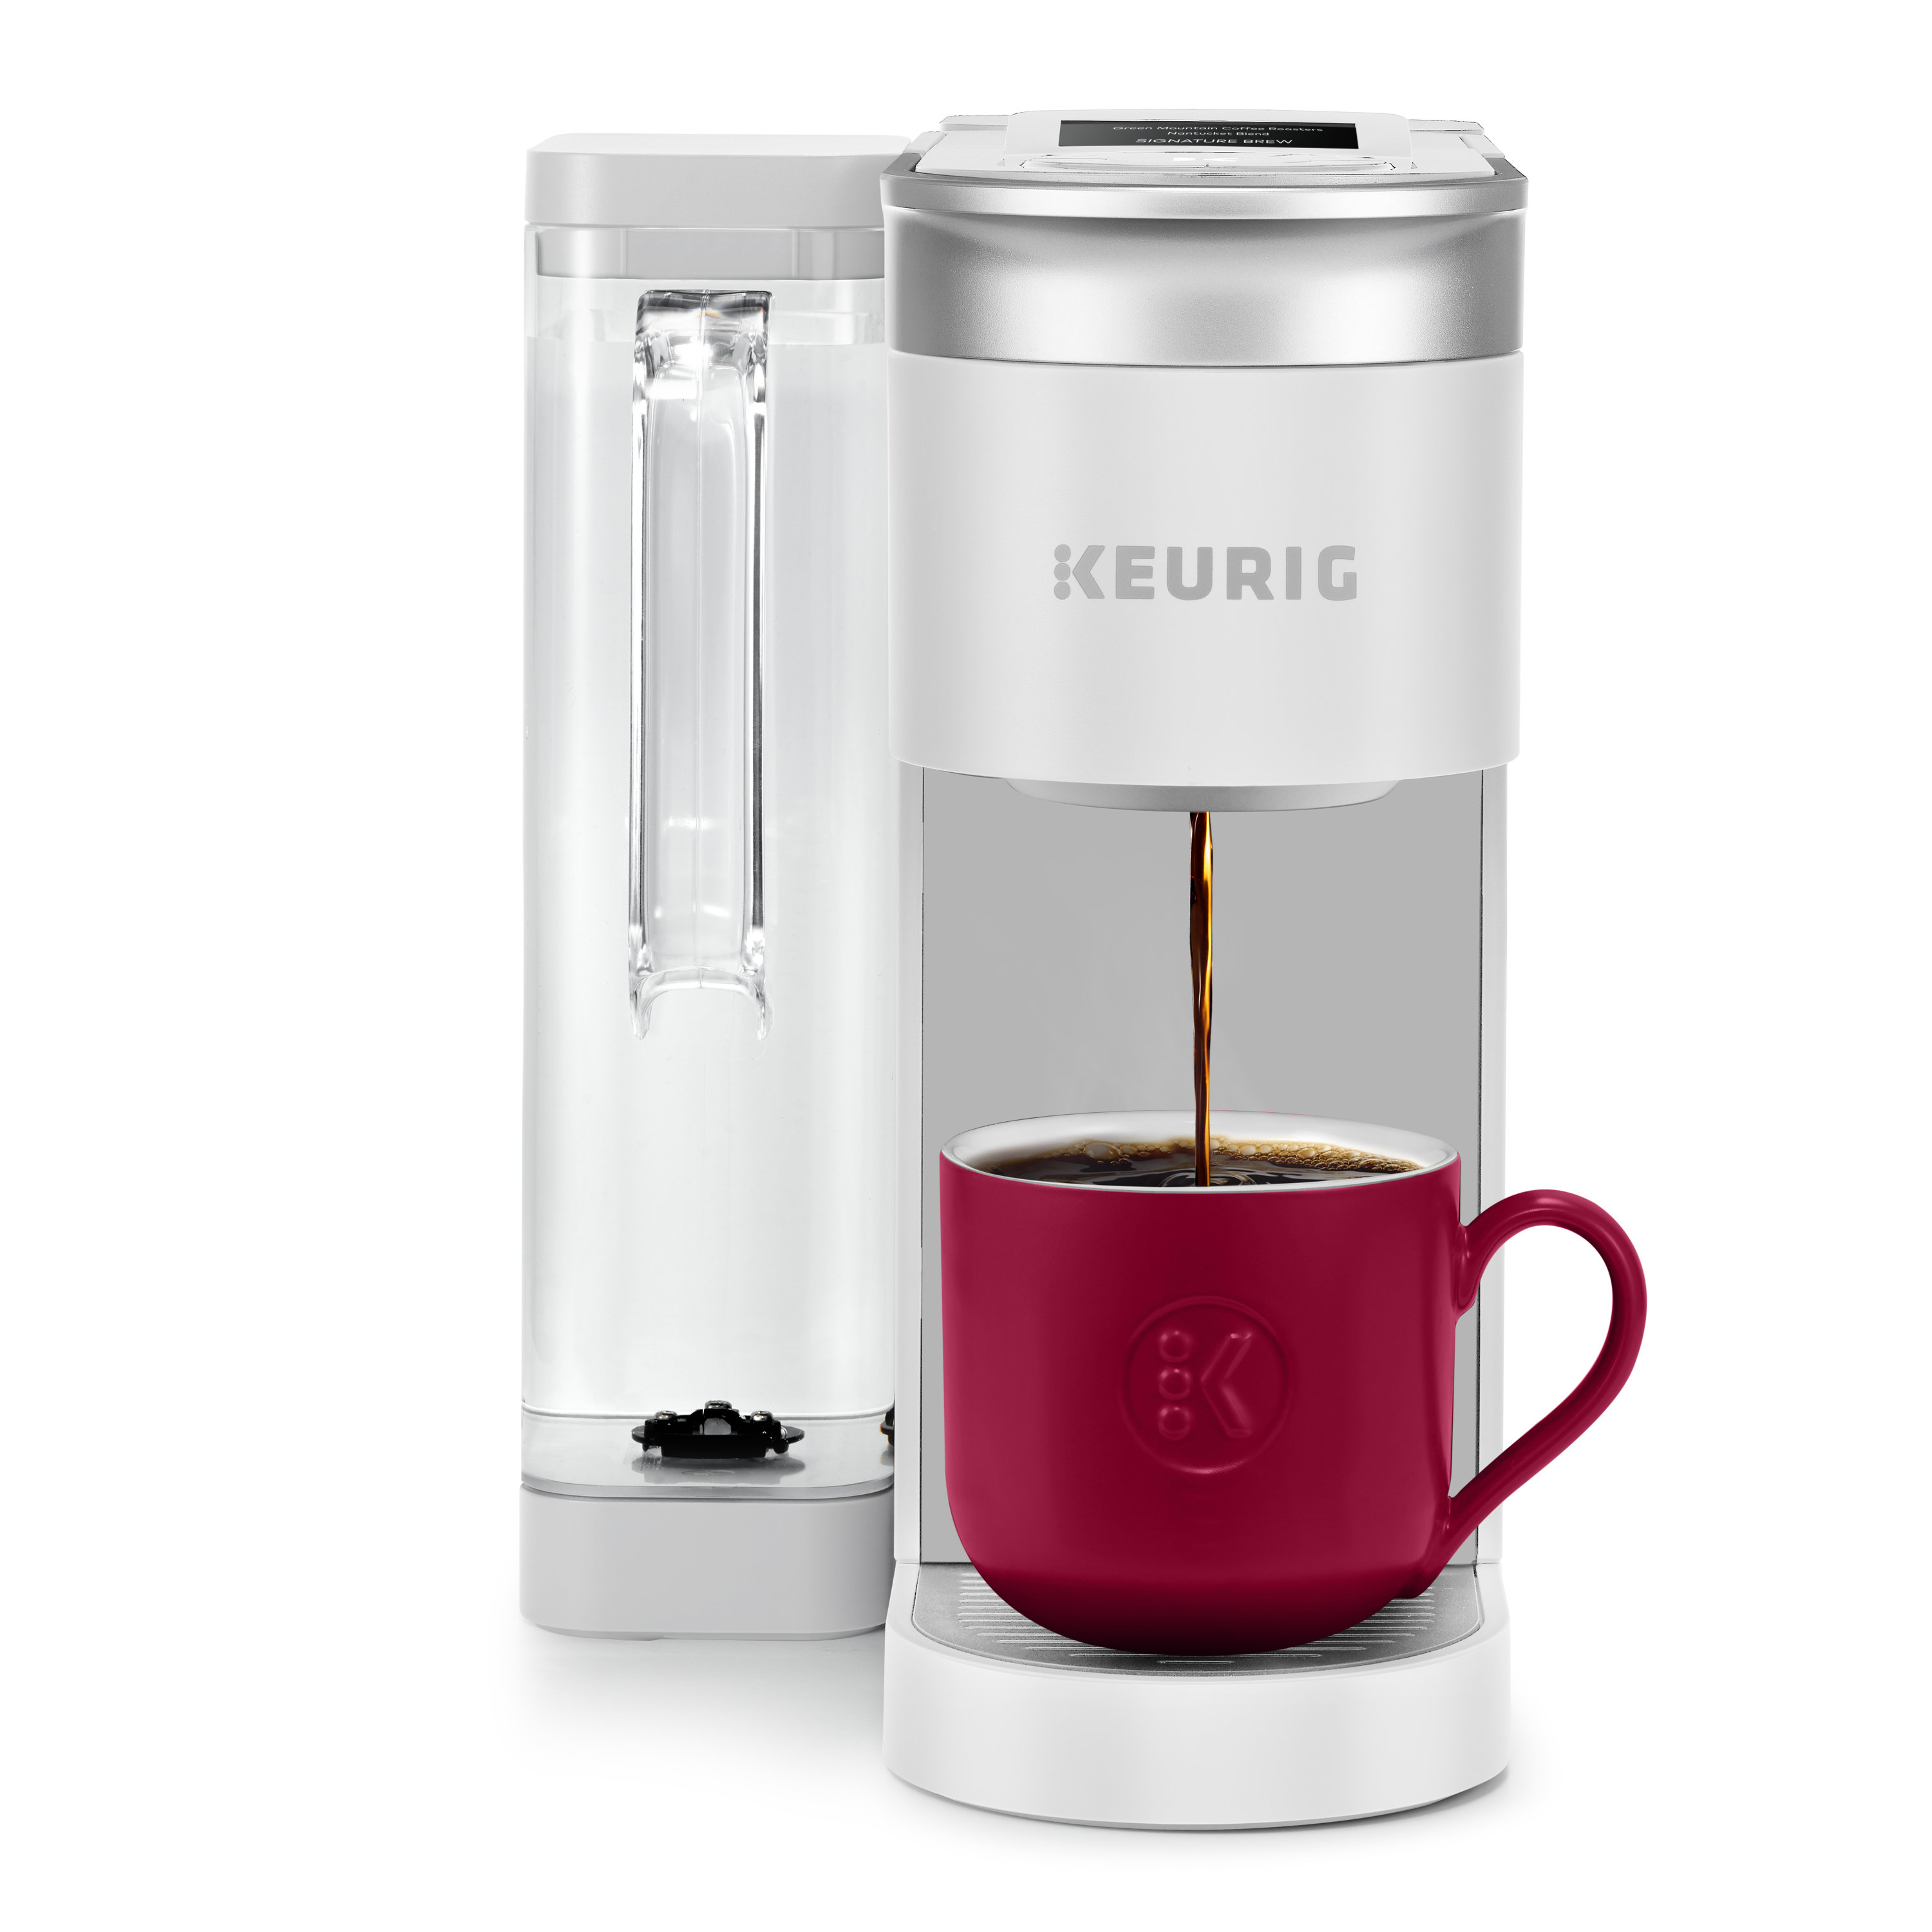 https://assets.wfcdn.com/im/96020163/compr-r85/2120/212051974/keurig-k-supreme-smart-coffee-maker-multistream-technology-brews-6-12oz-cup-sizes.jpg